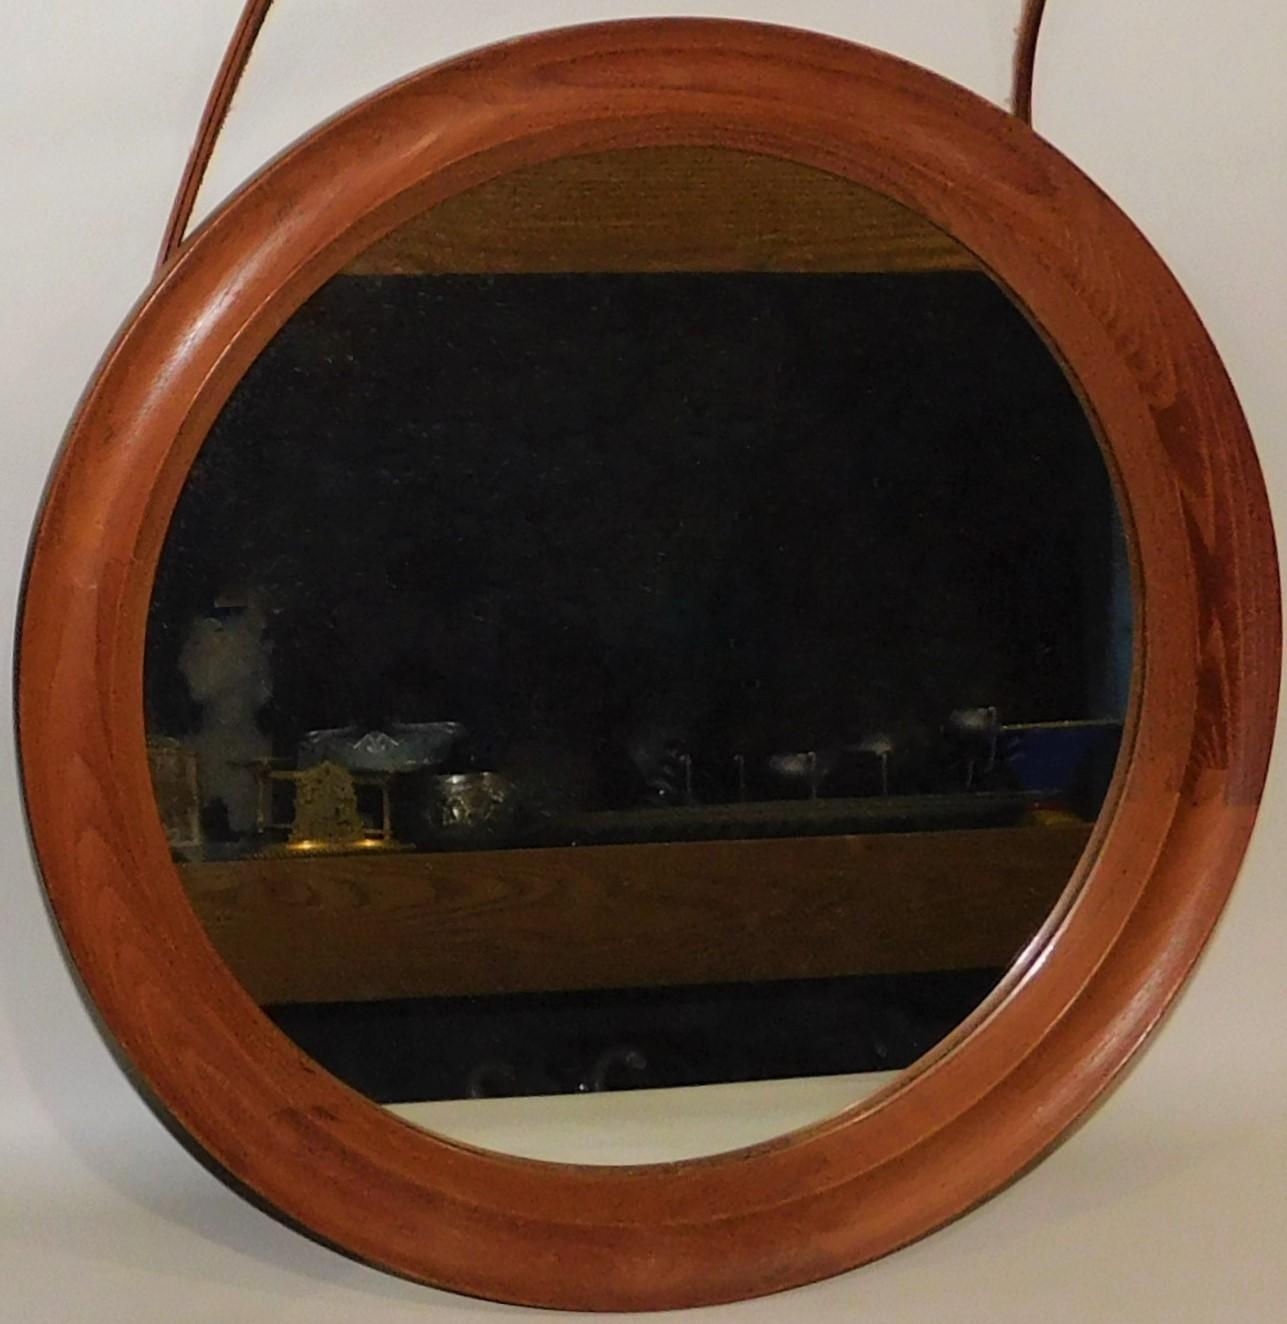 Pedersen & Hansen Danish Teak Oval Mirror with Leather Hanger Strap 2